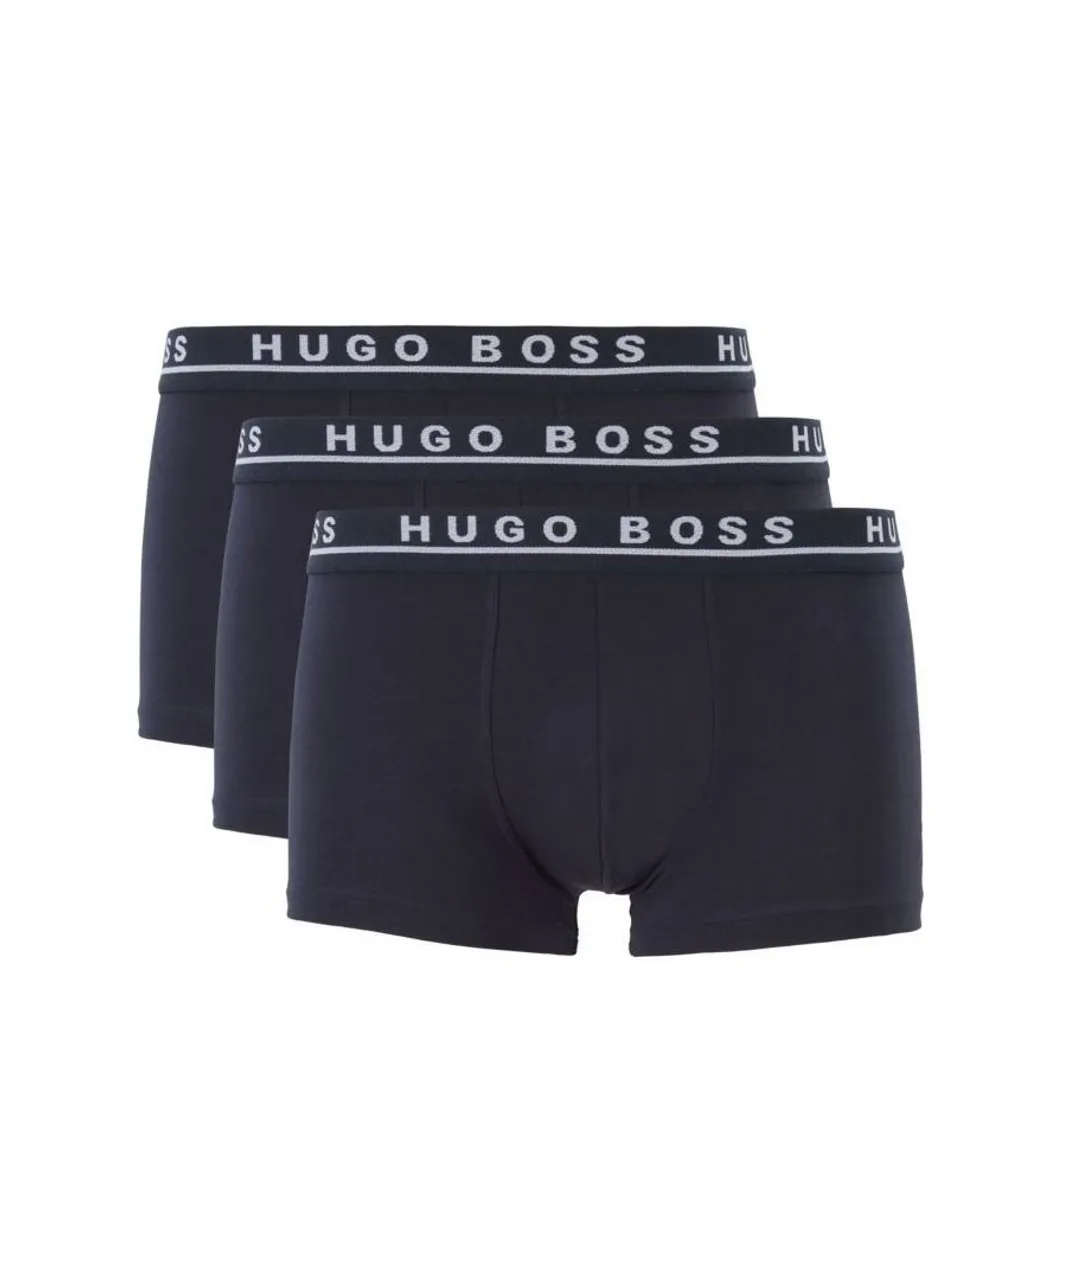 Hugo Boss Mens Bodywear Three Pack Regular Rise Dark Blue Boxer Trunks - Navy Cotton